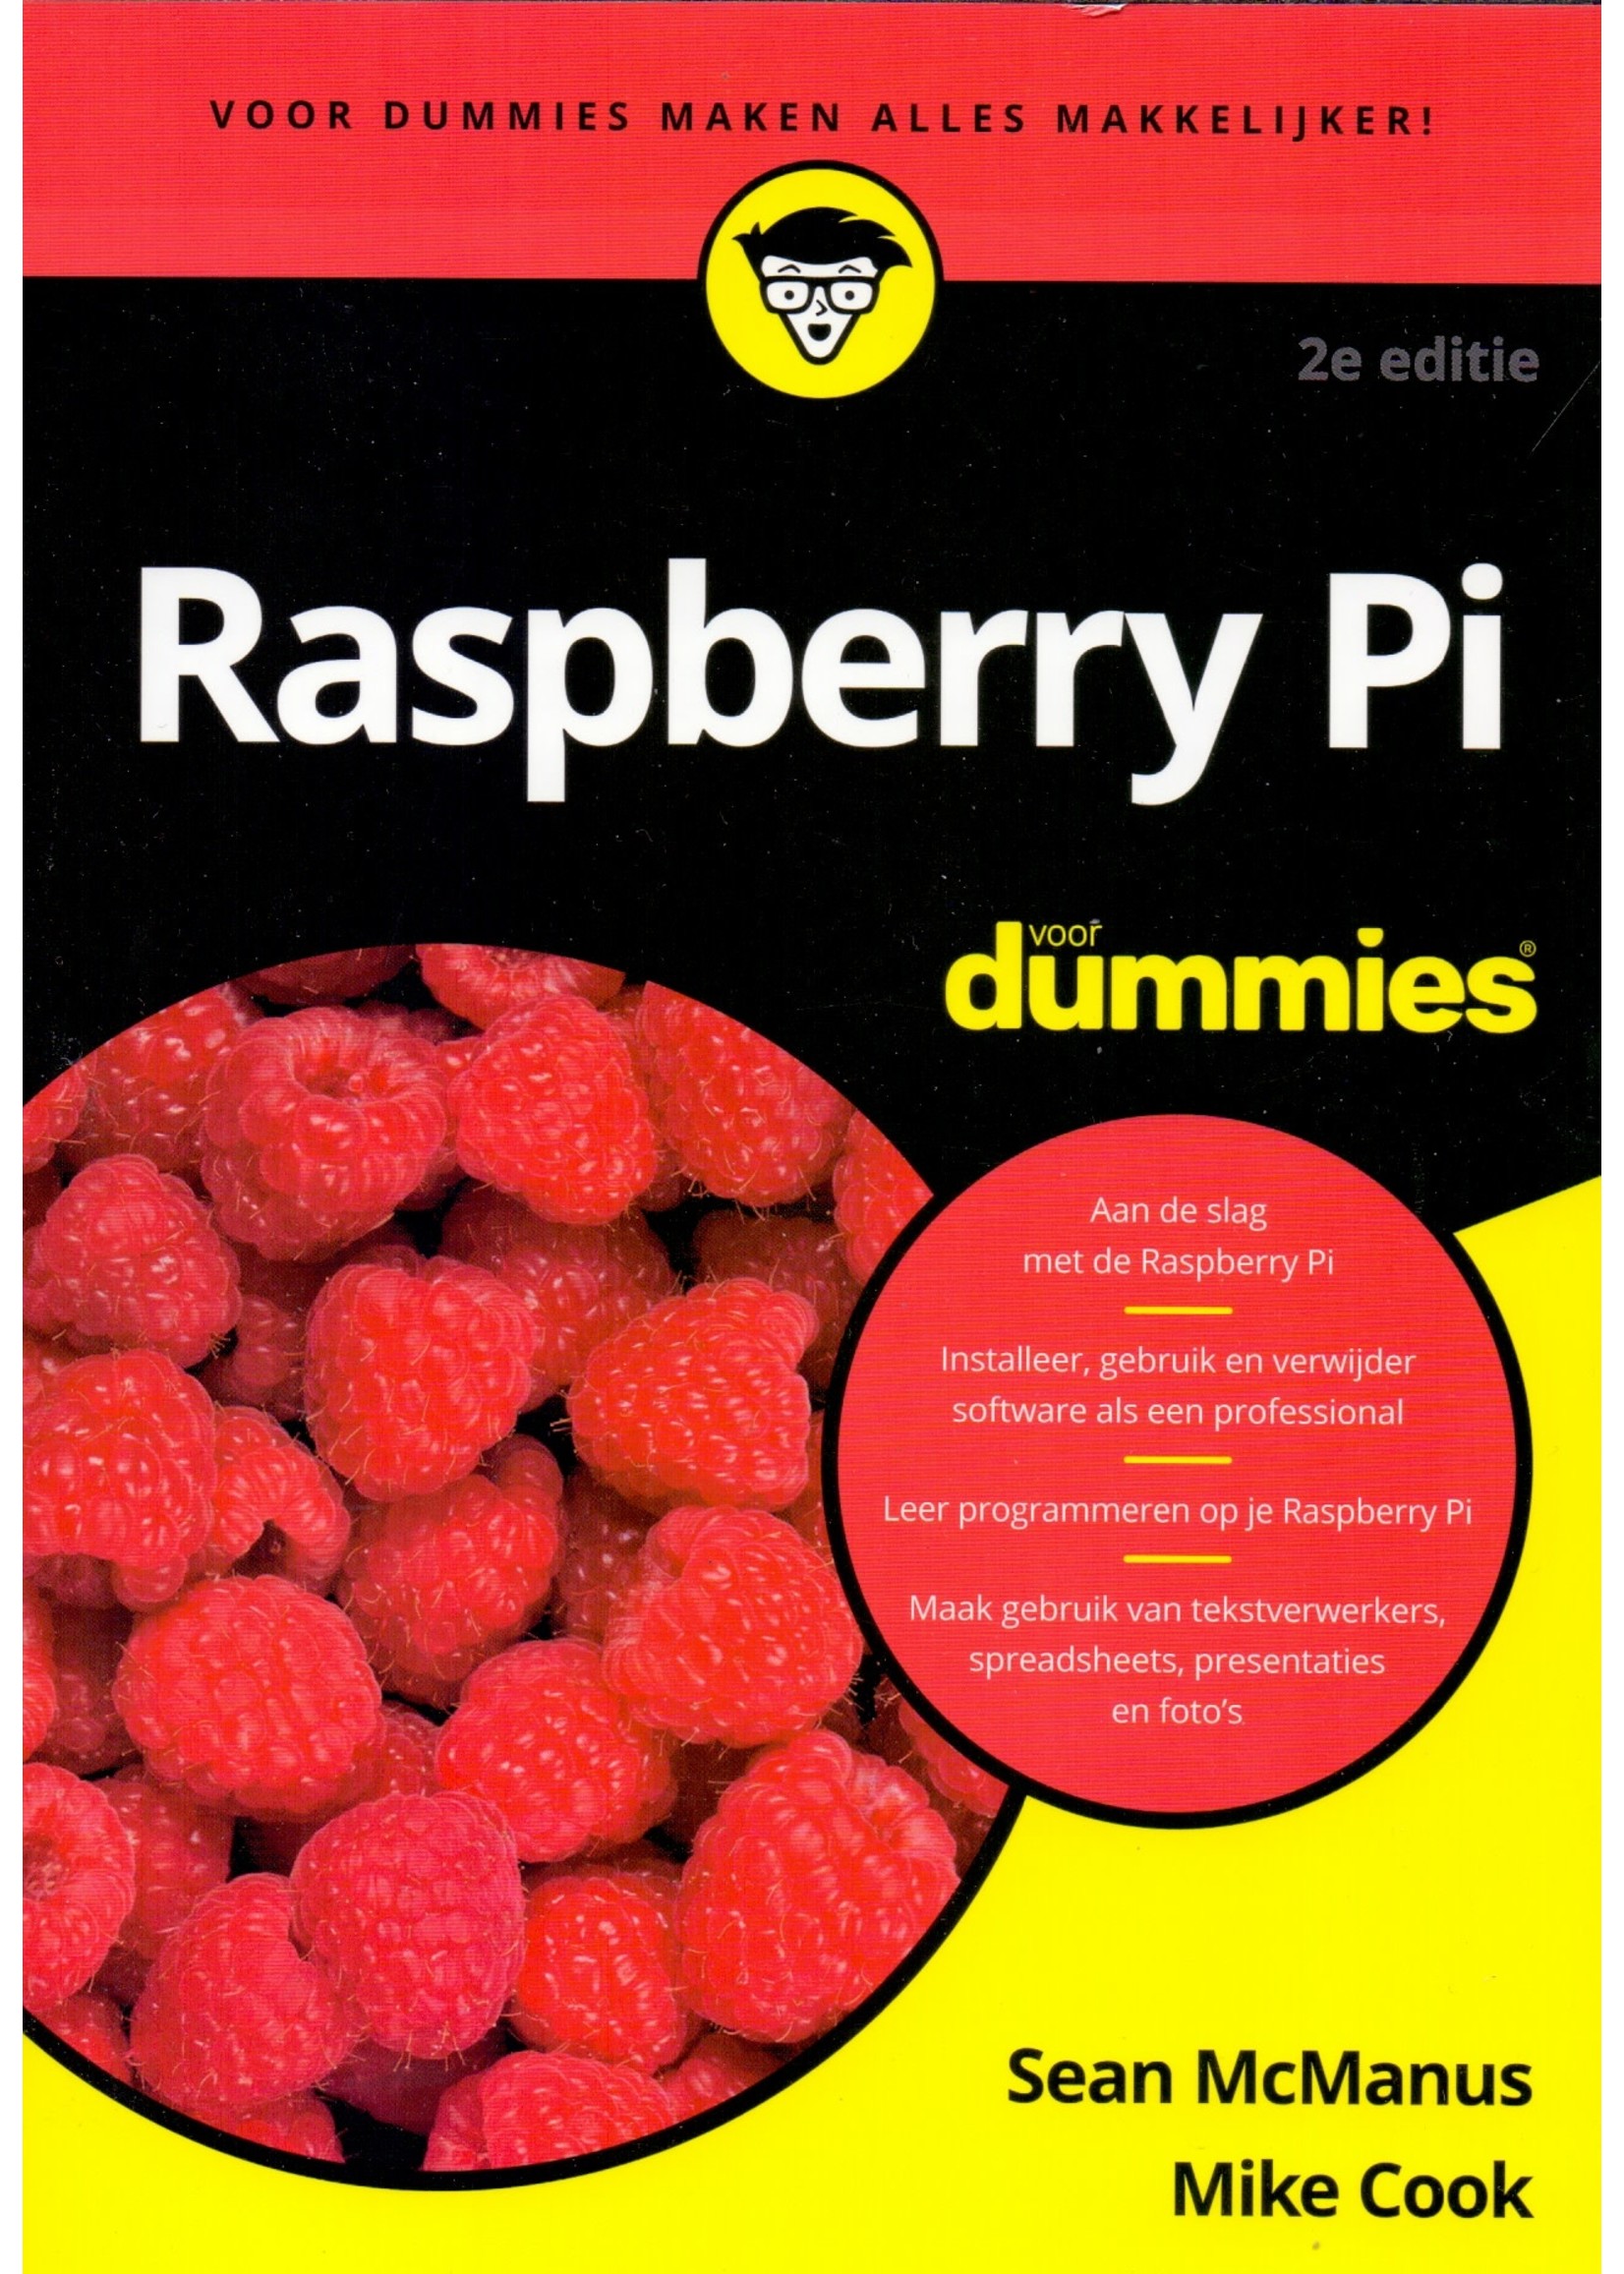 Boek Raspberry Pi voor Dummies, Sean McManus, Mike cook, voor Dummies, BBNC Uitgevers, 9789045354859